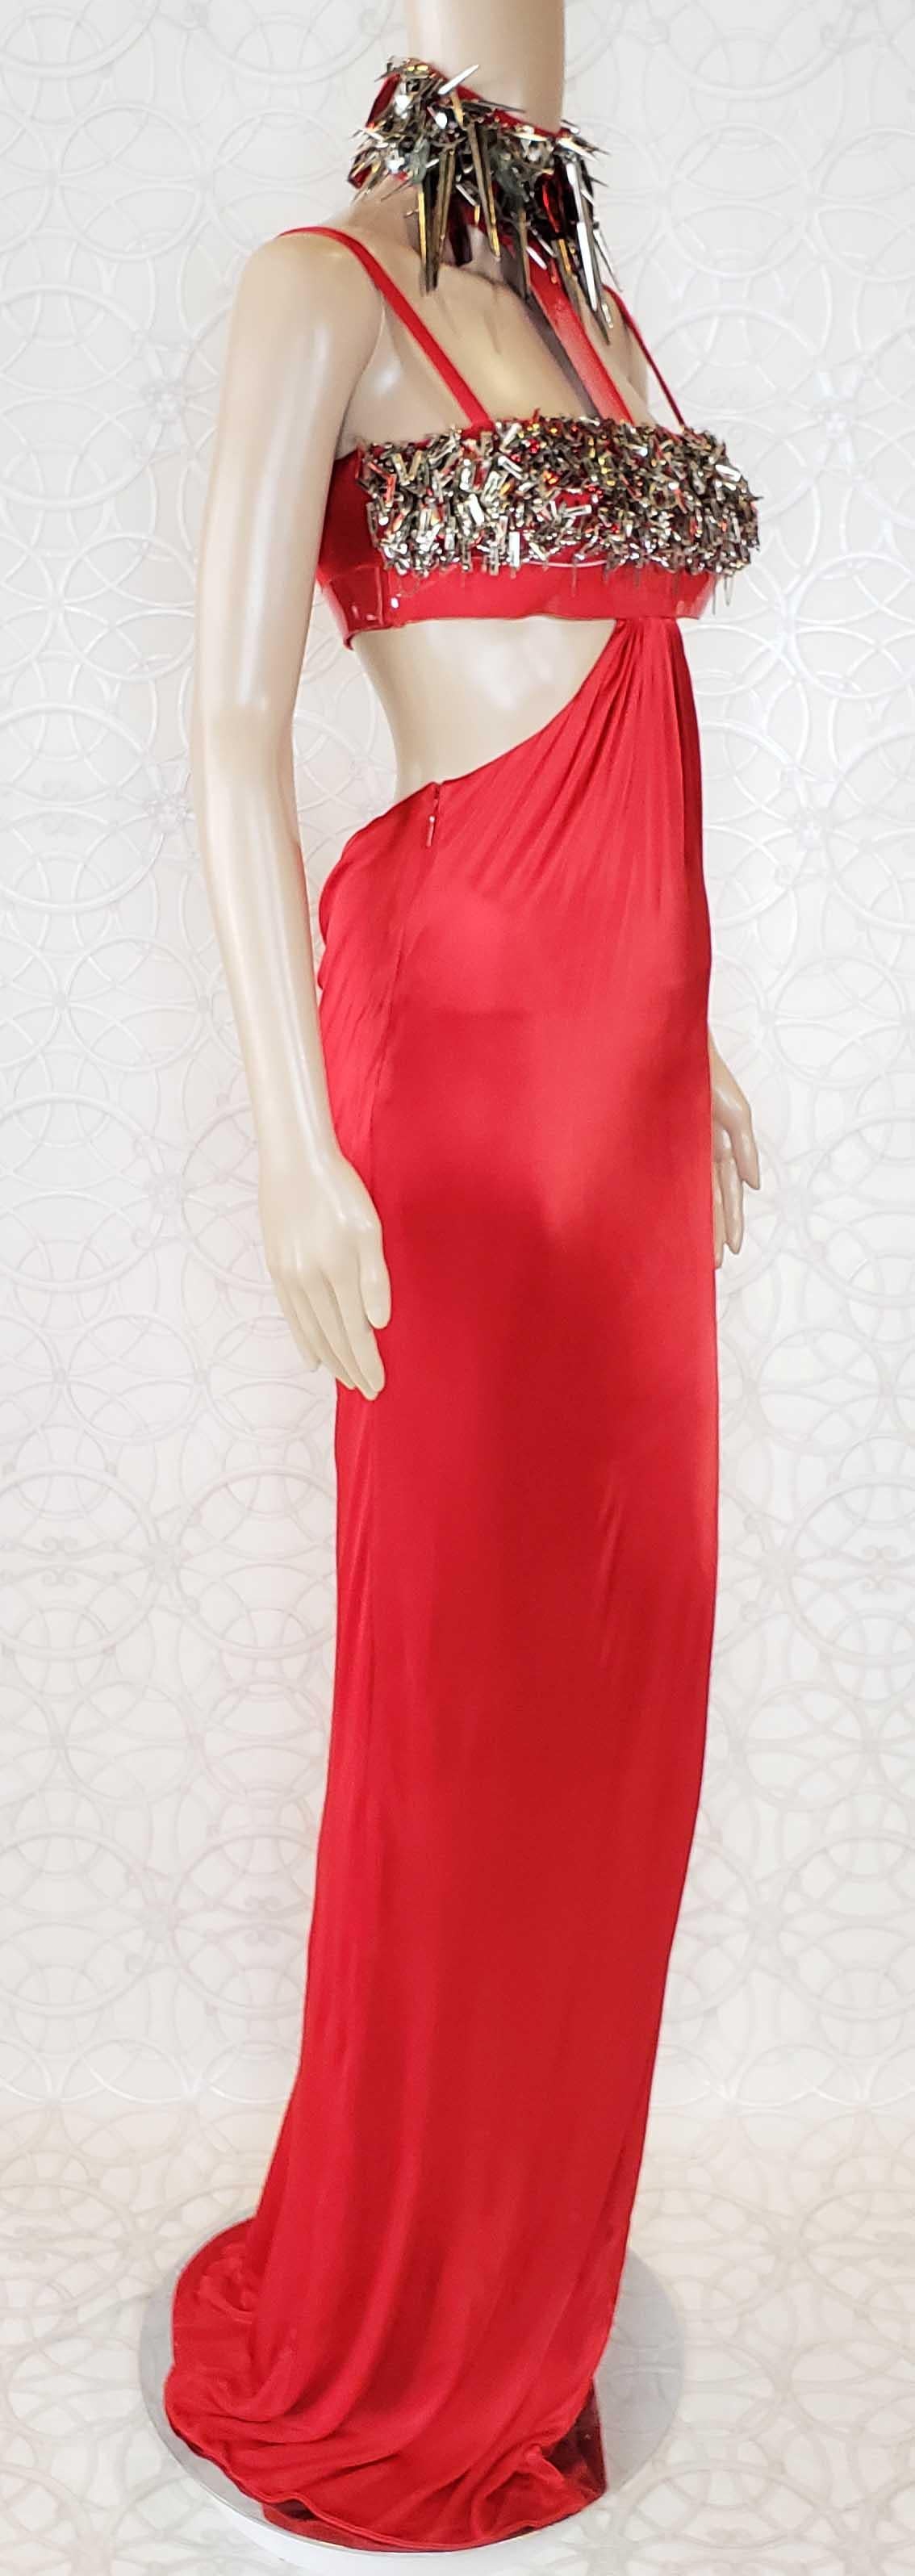 cara delevingne red dress